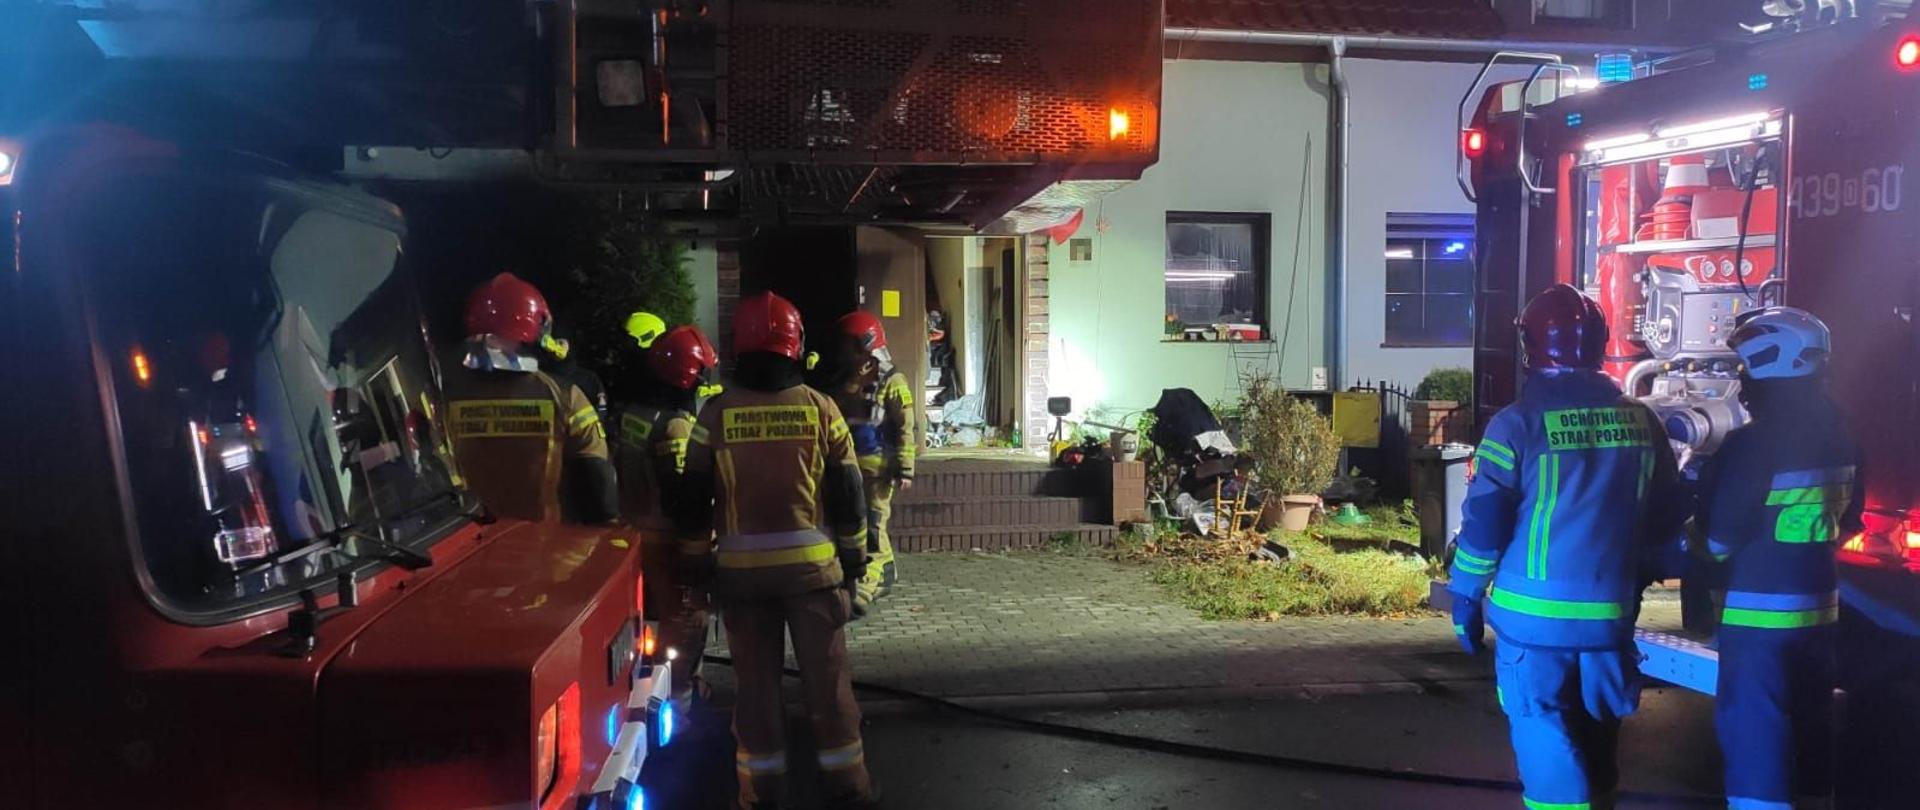 Strażacy Państwowej Straży Pożarnej oraz OSP w ubraniach specjalnych stojący przy samochodach pożarniczych przed budynkiem mieszkalnym, w którym doszło do pożaru mieszkania. W budynku otwarte drzwi wejściowe na oścież.